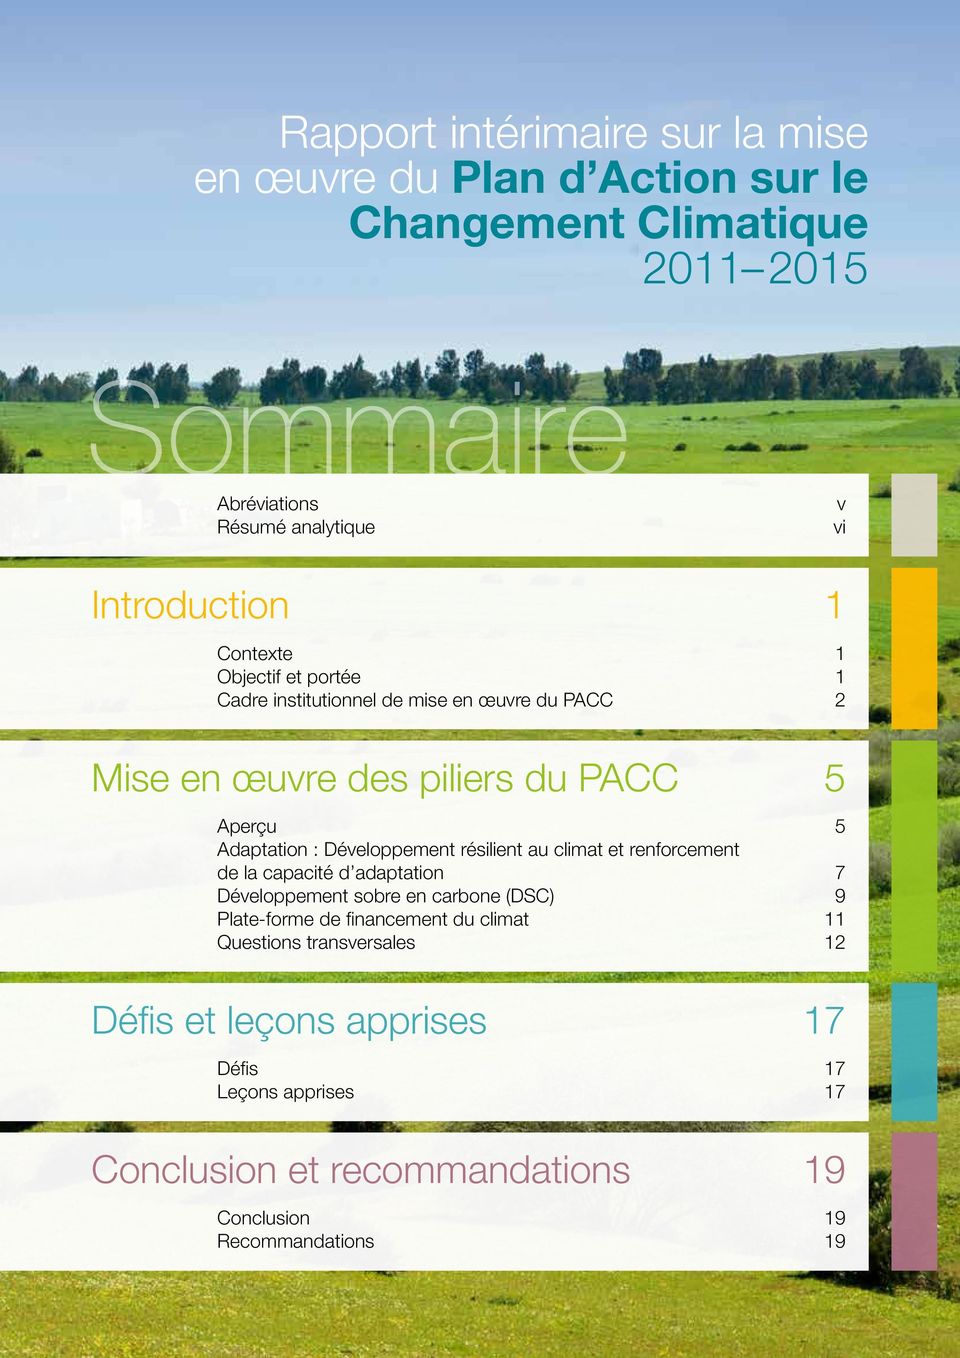 : Développement résilient au climat et renforcement de la capacité d adaptation 7 Développement sobre en carbone (DSC) 9 Plate-forme de financement du